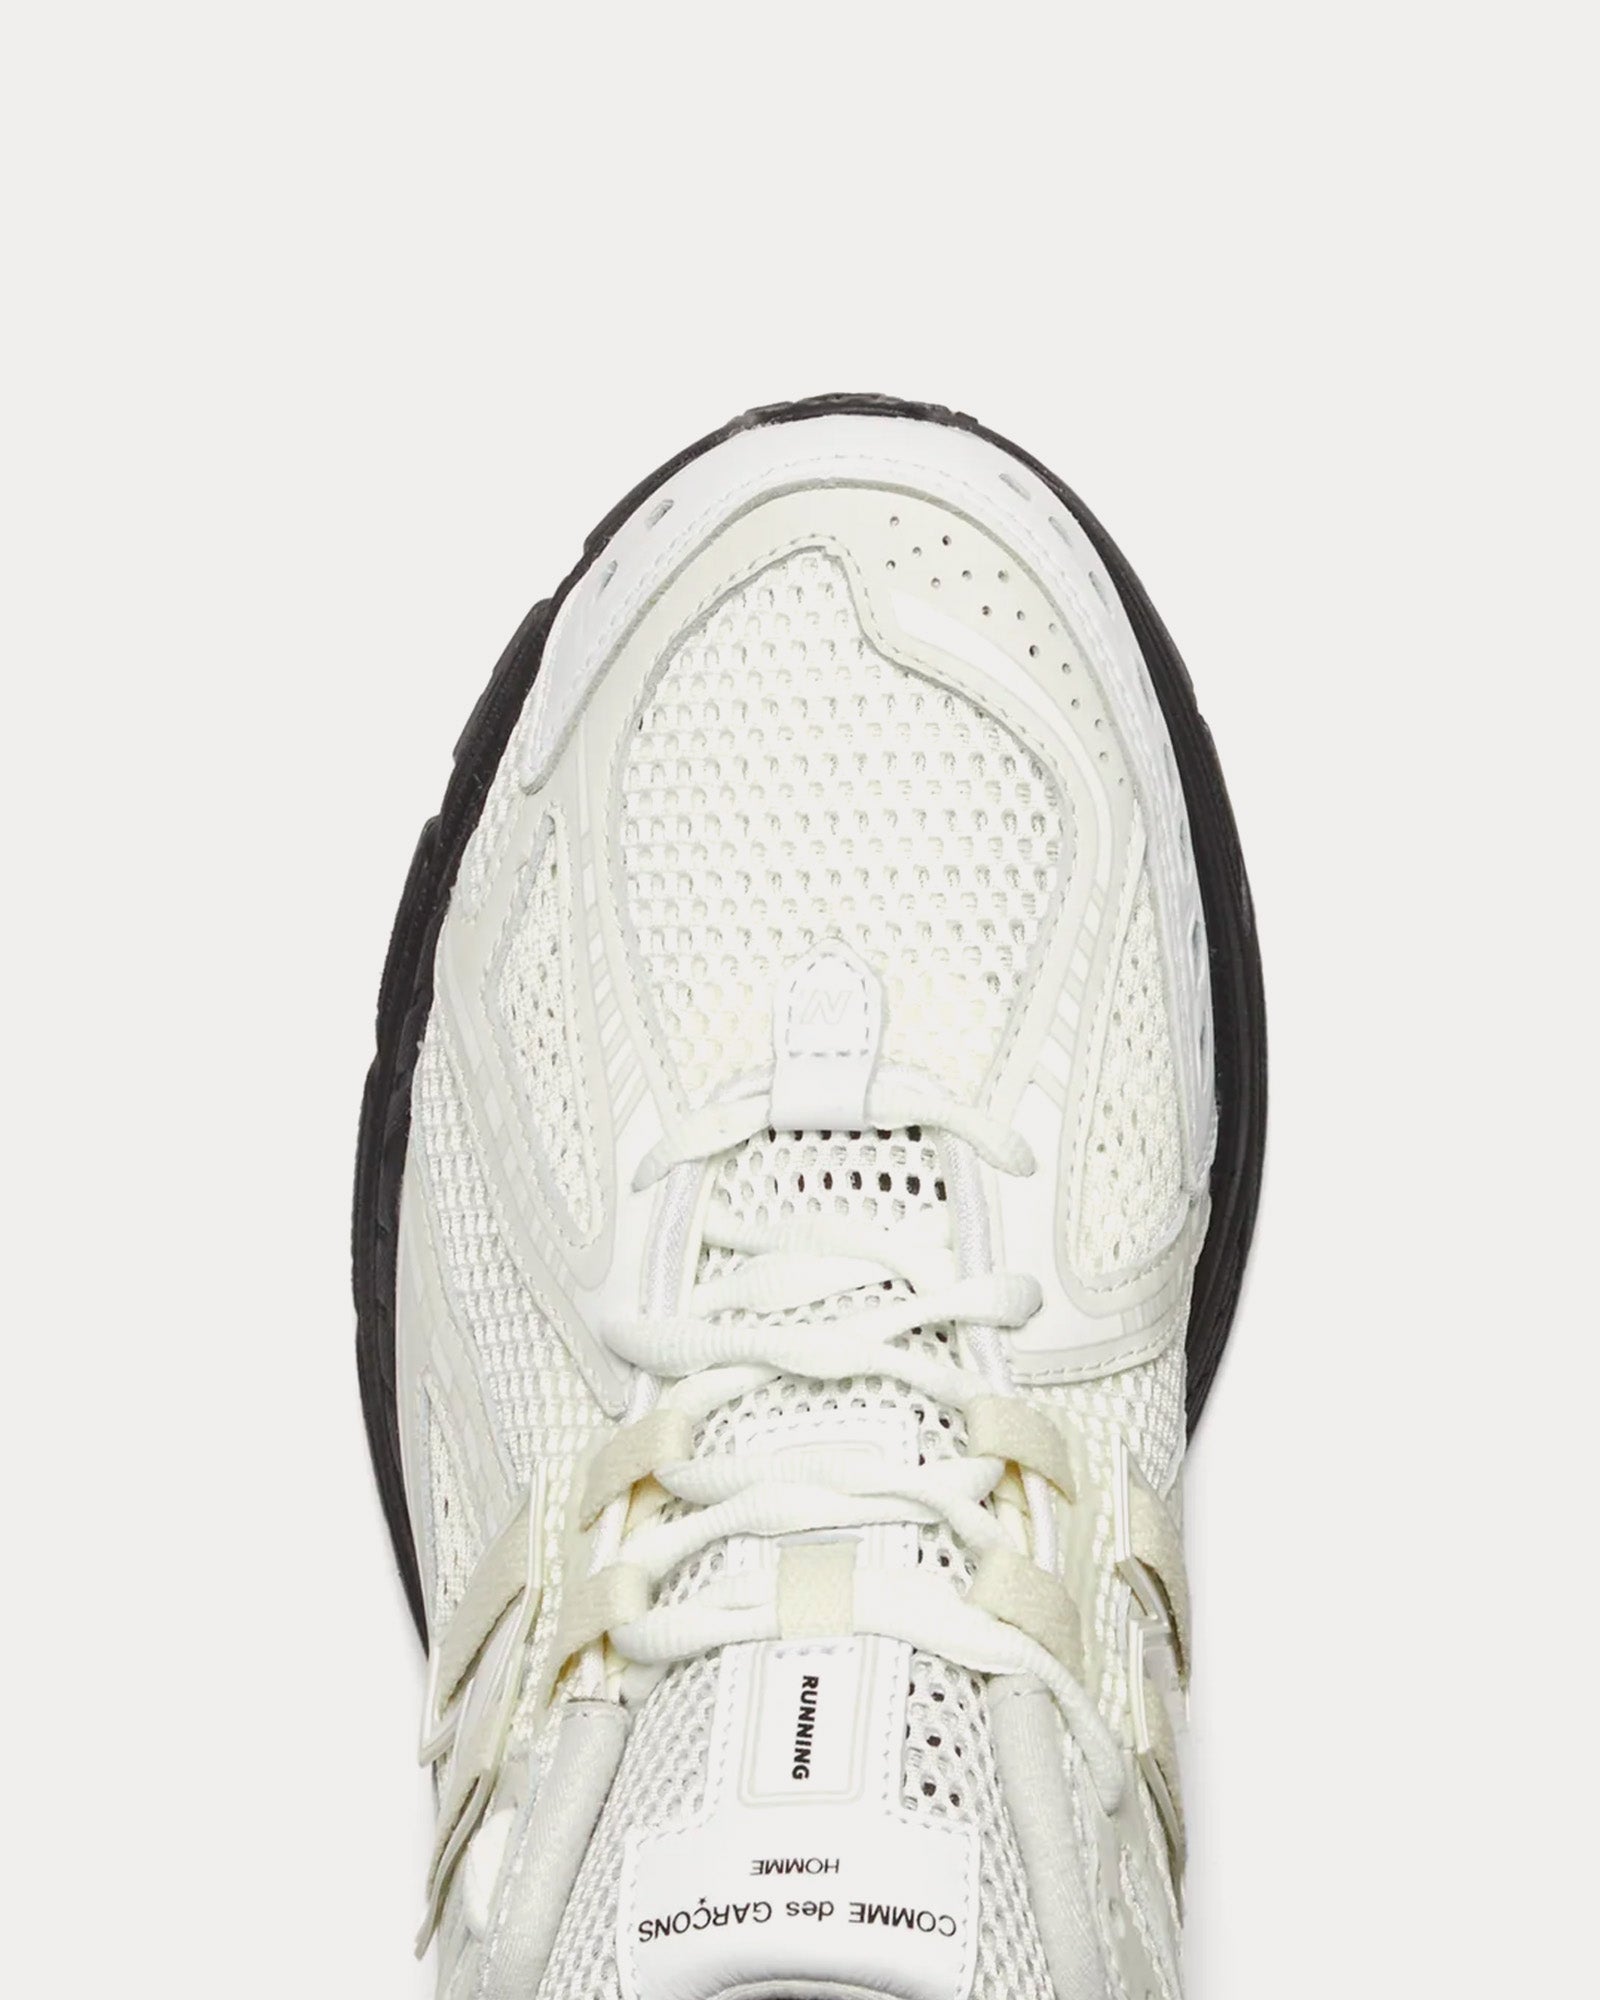 New Balance x Comme des Garçons Homme - 1906r White / Black Low Top Sneakers